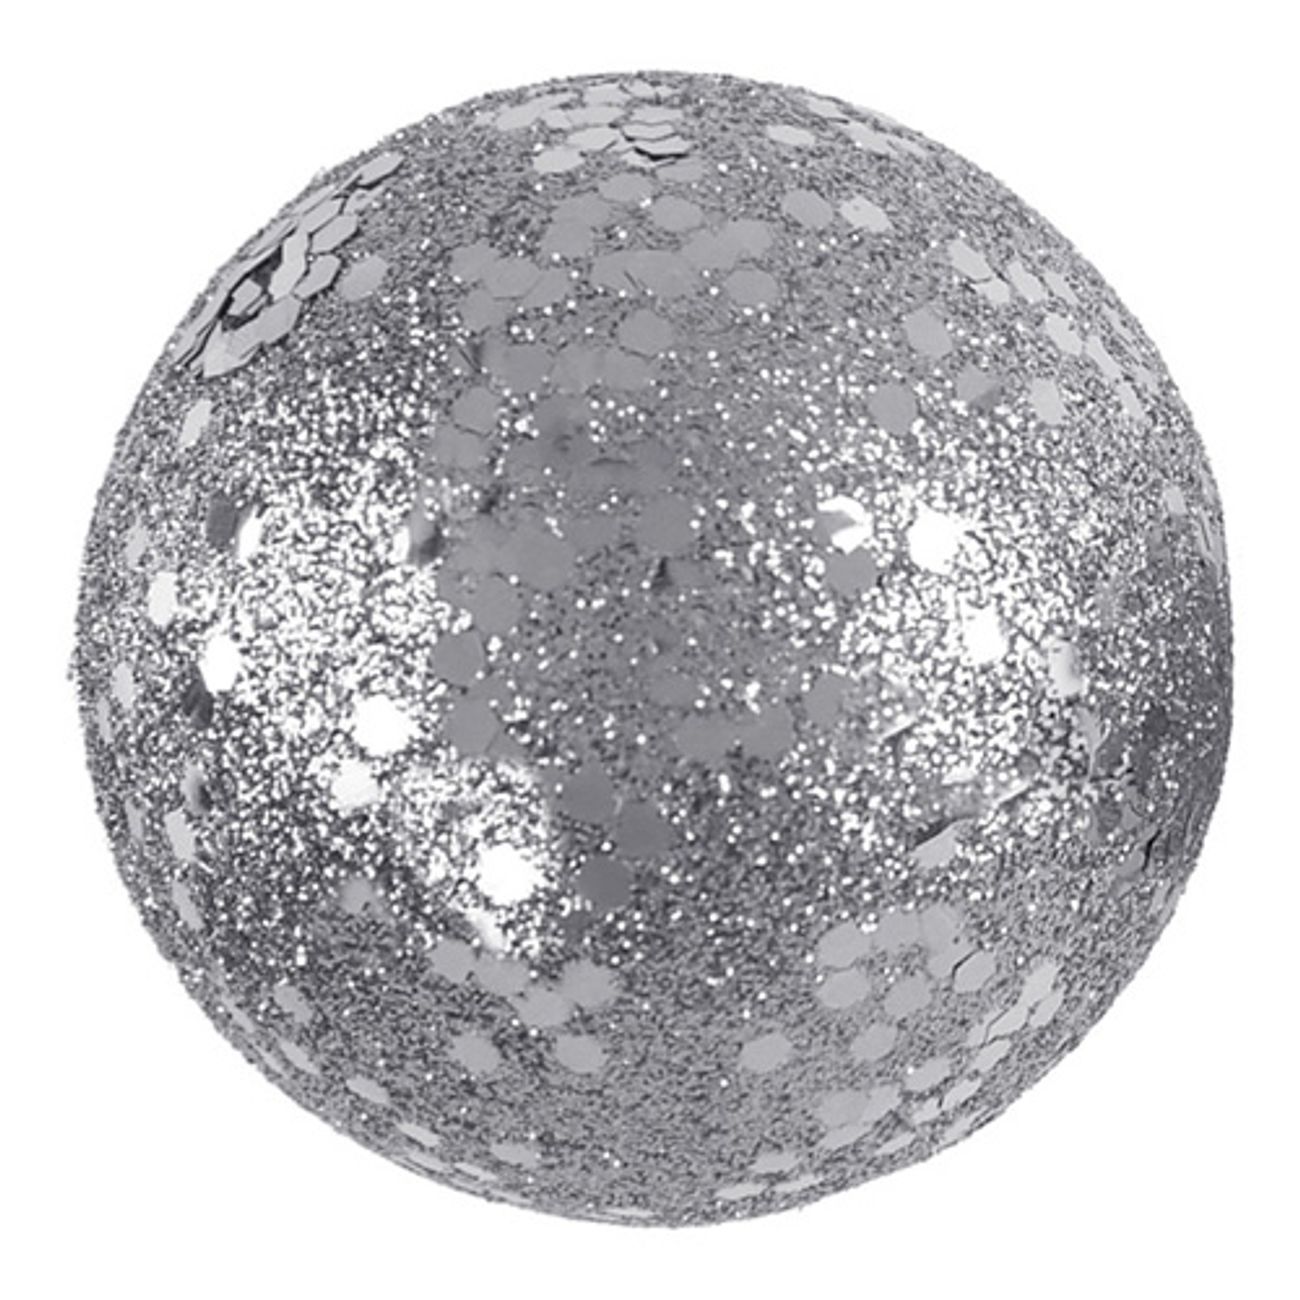 dekorationsbollar-silverglitter-1